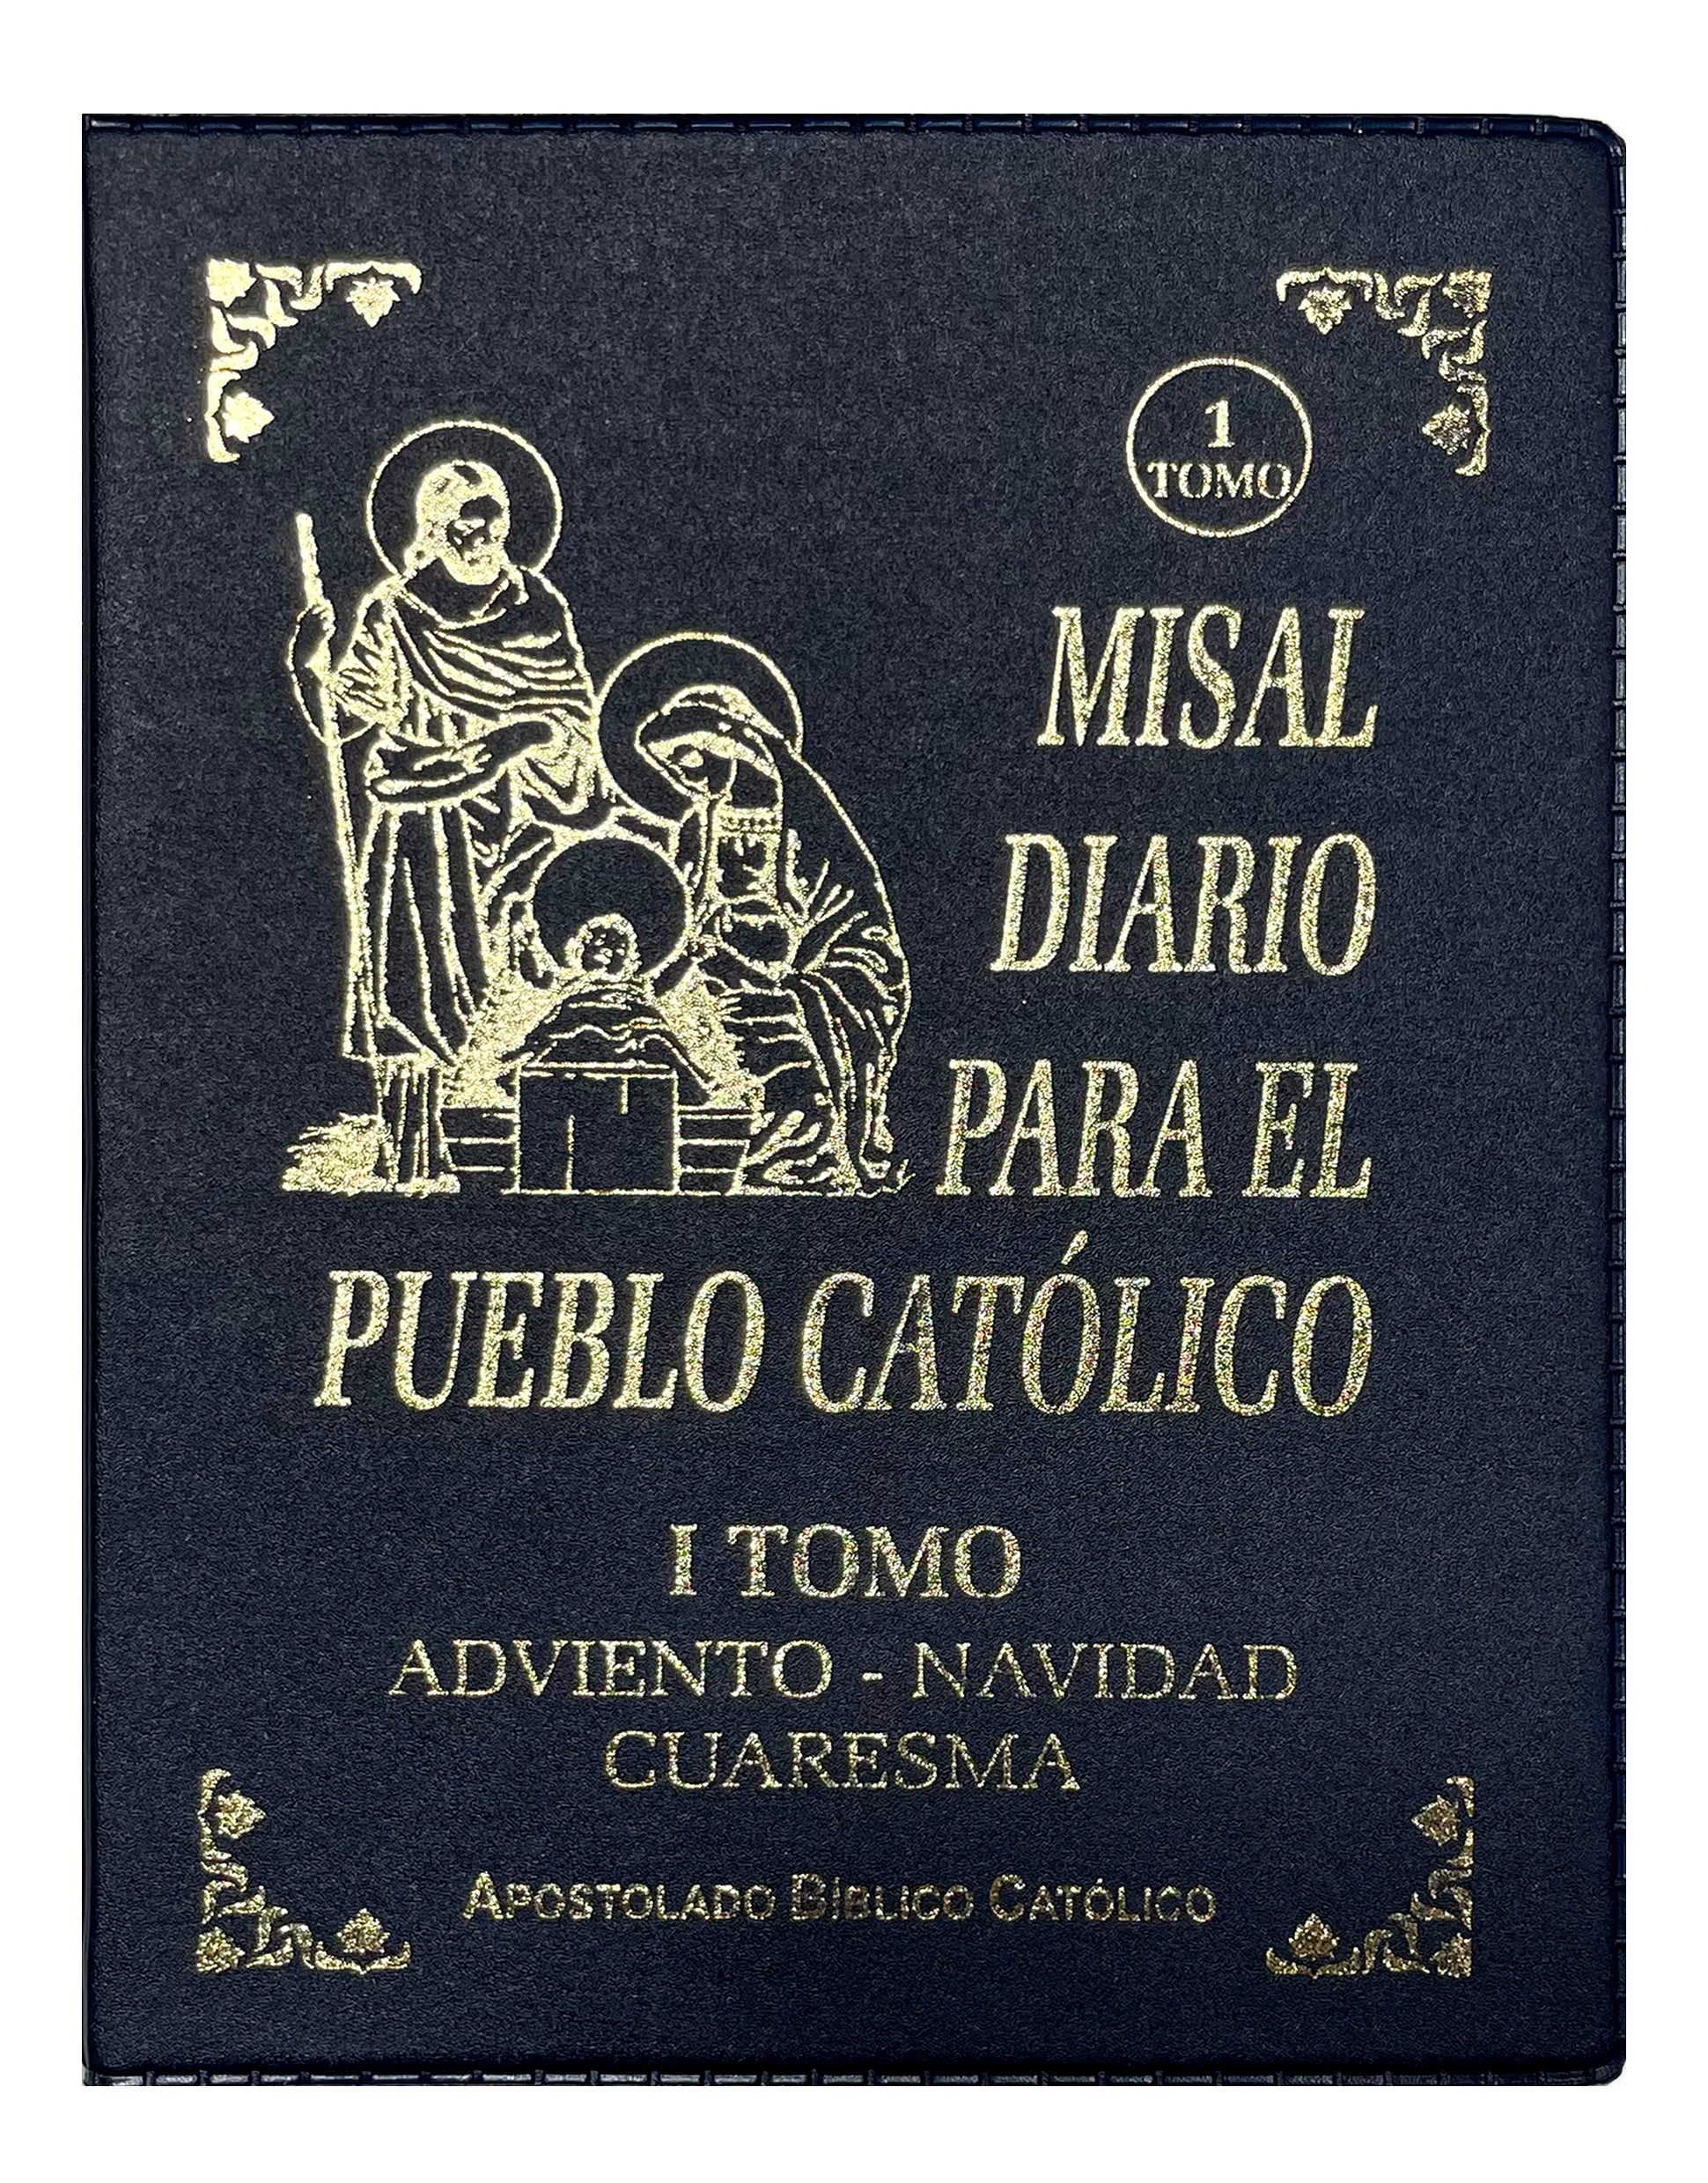 Misal Diario Para el Pueblo Católico 3 tomos incluidos